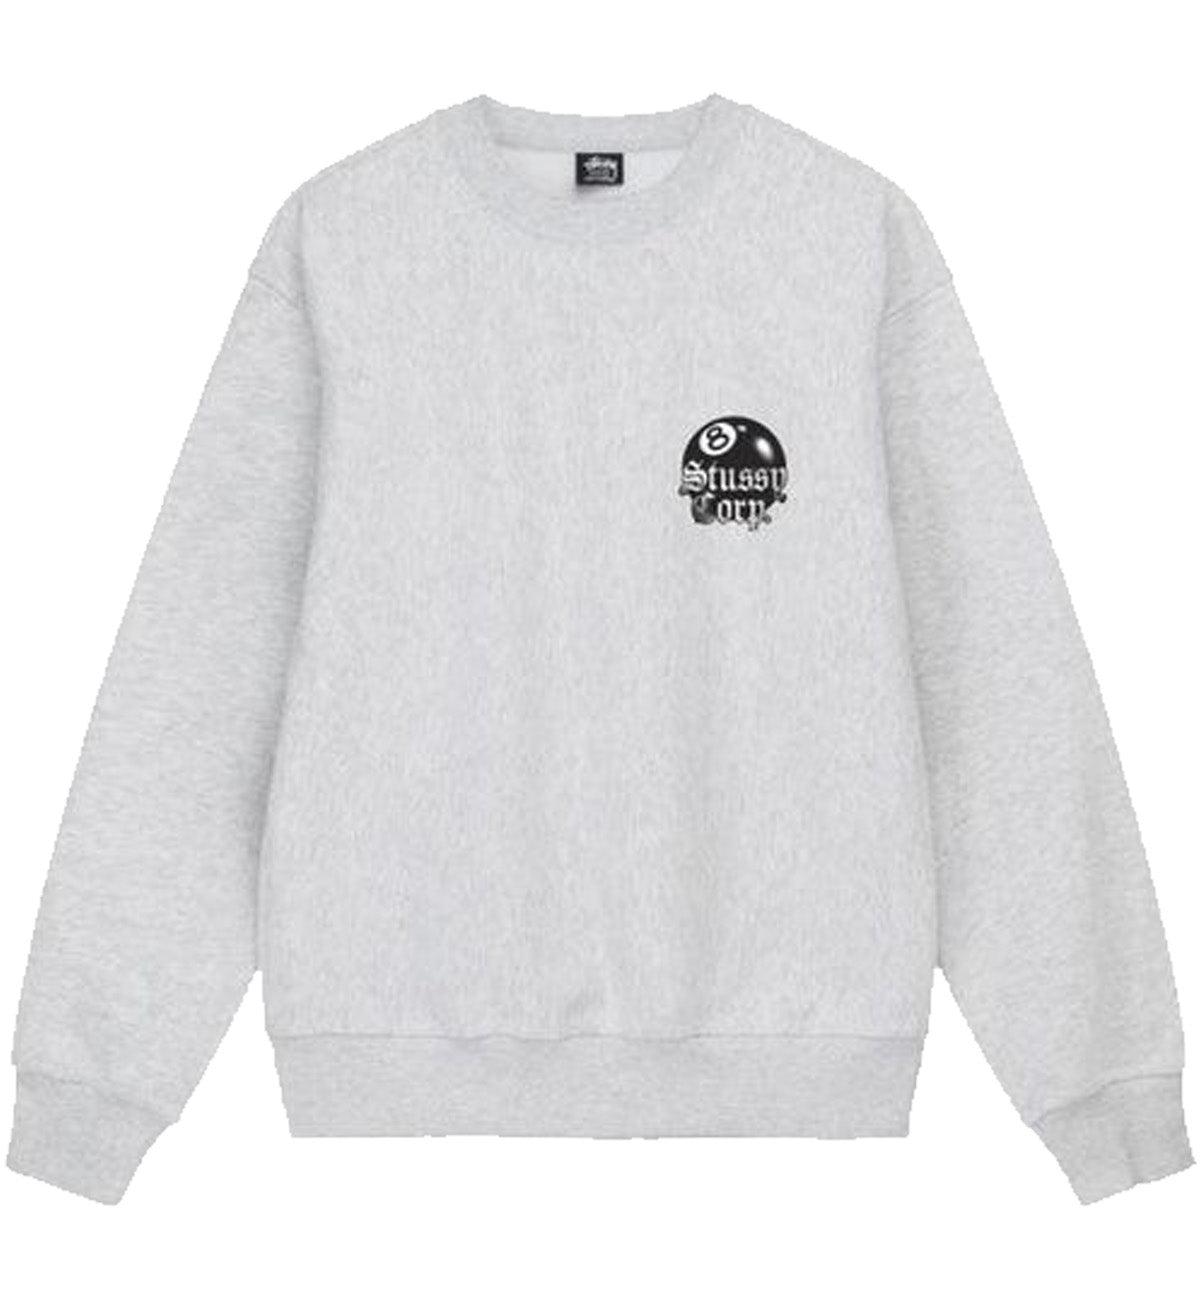 Stussy 8 Ball Corp Sweatshirt (White)